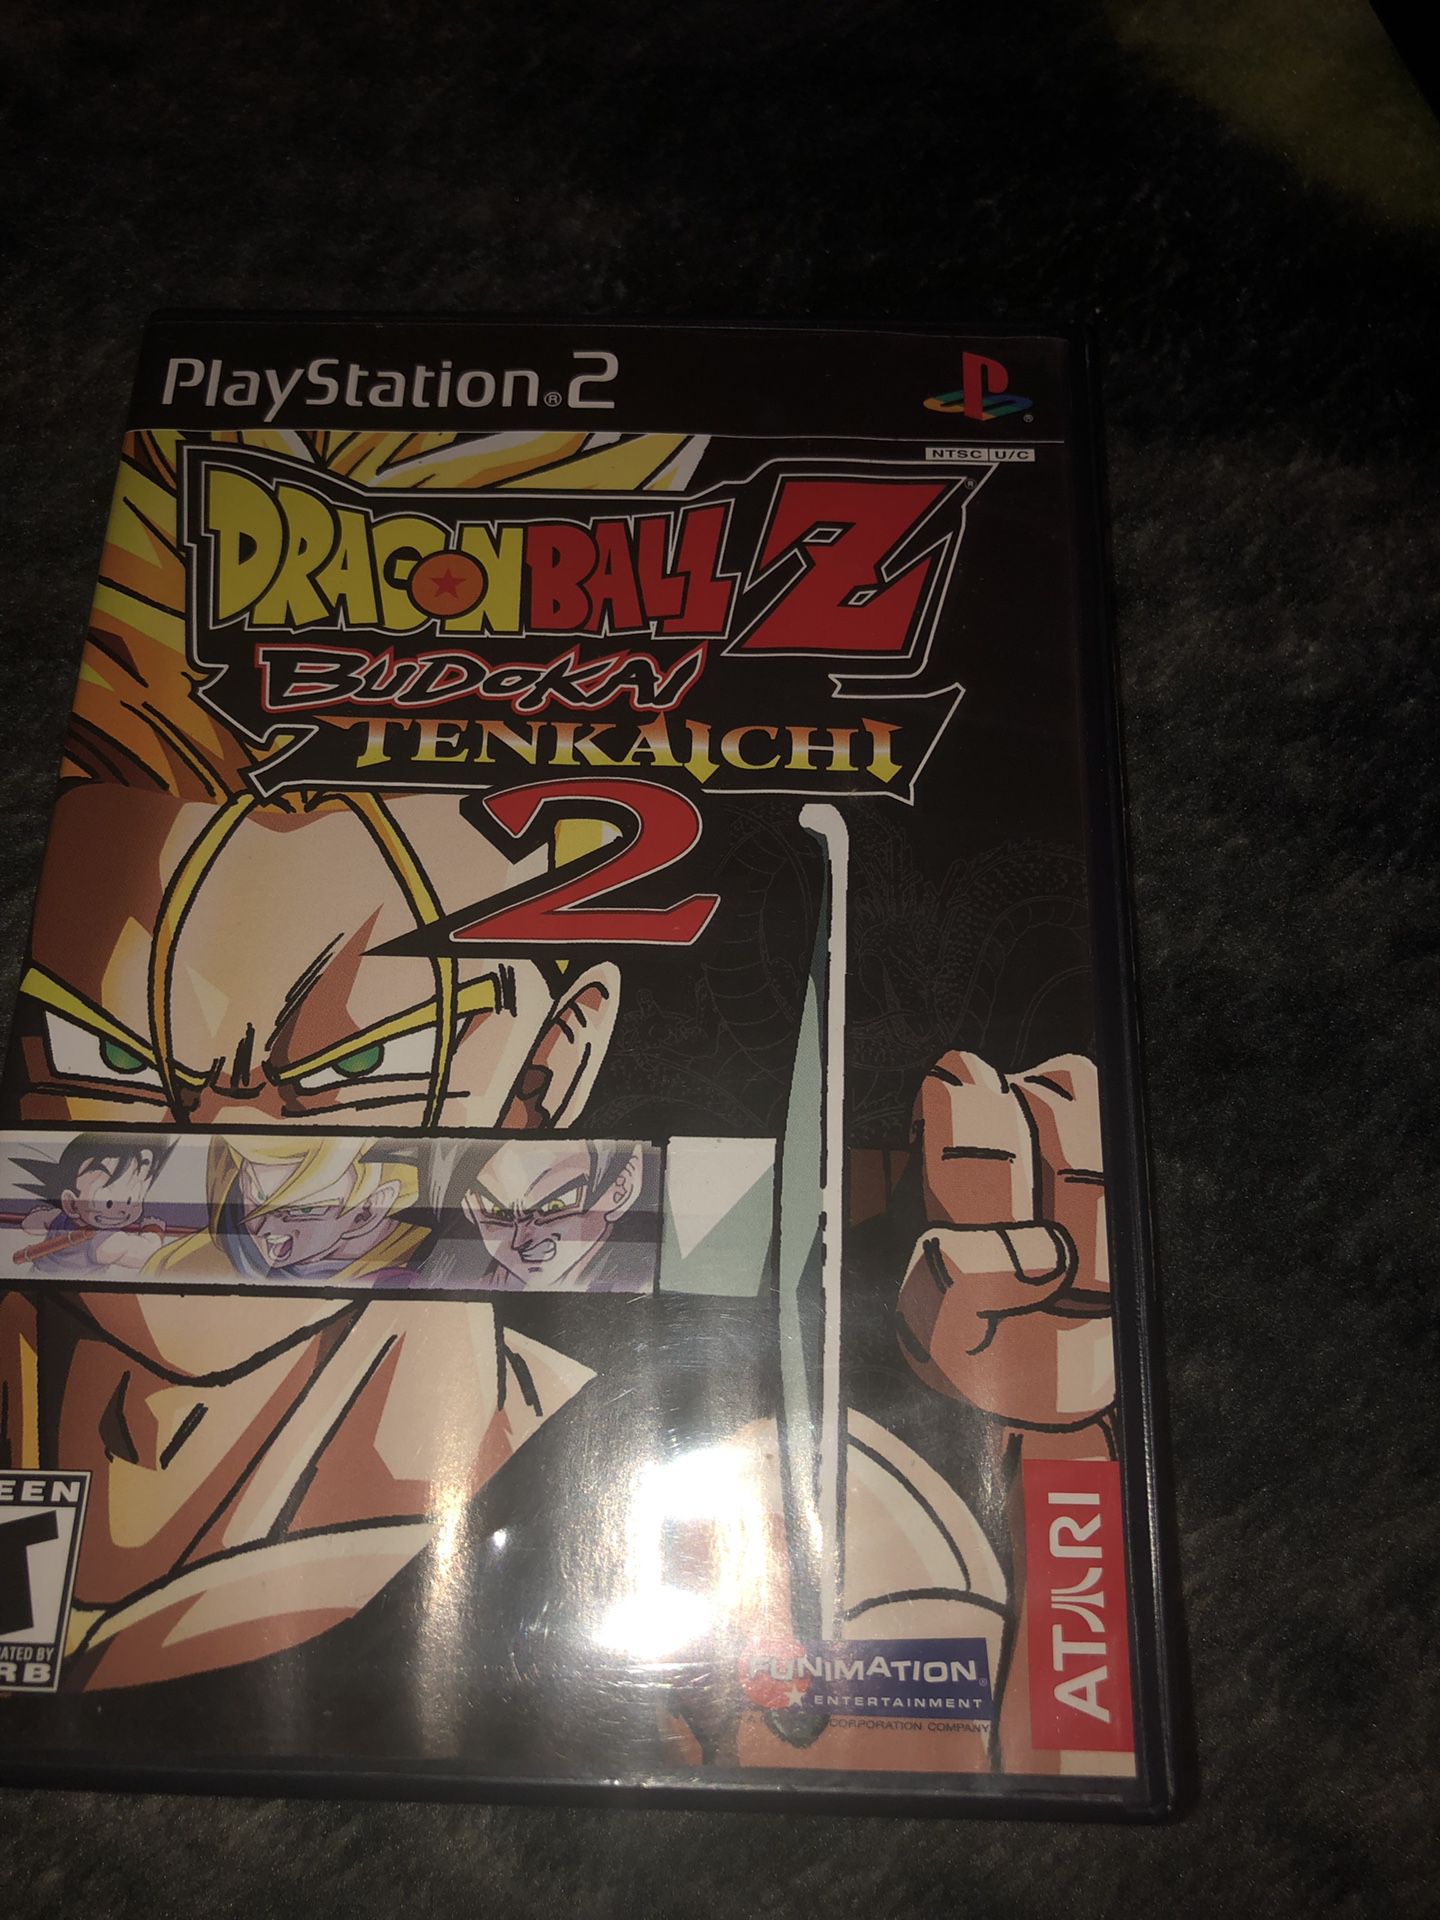 DragonBall Z Budokai Tenkaichi 2 PS2